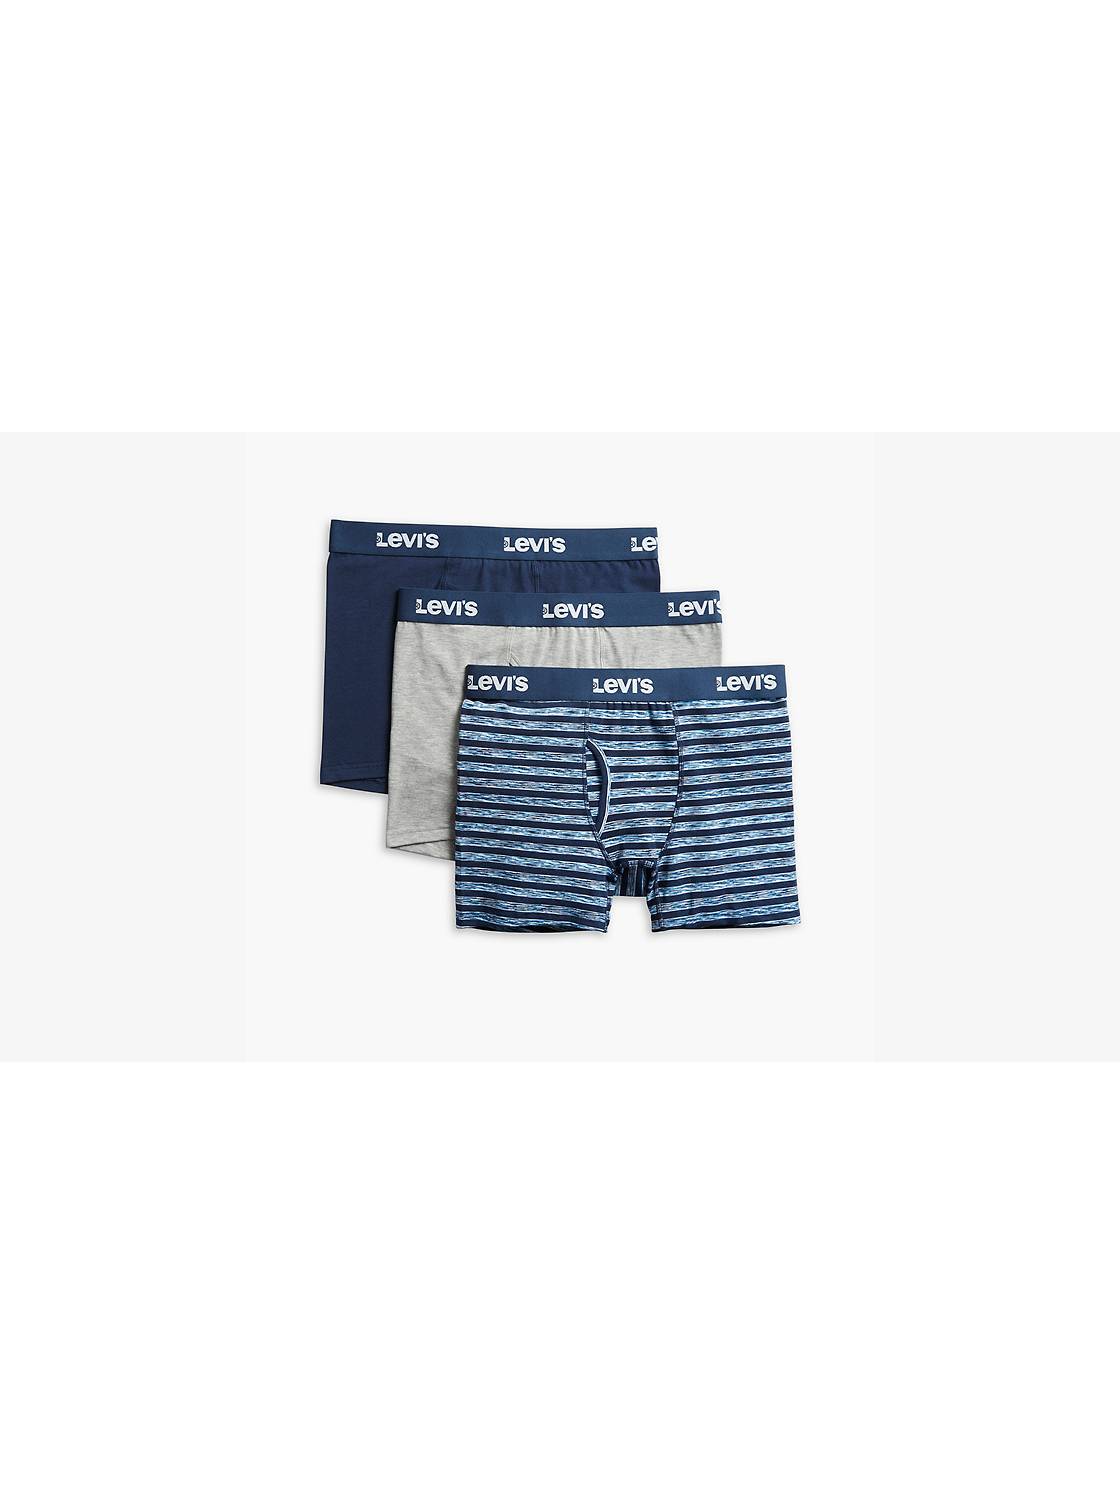 Louis Vuitton Men's Underwear 3 in 1